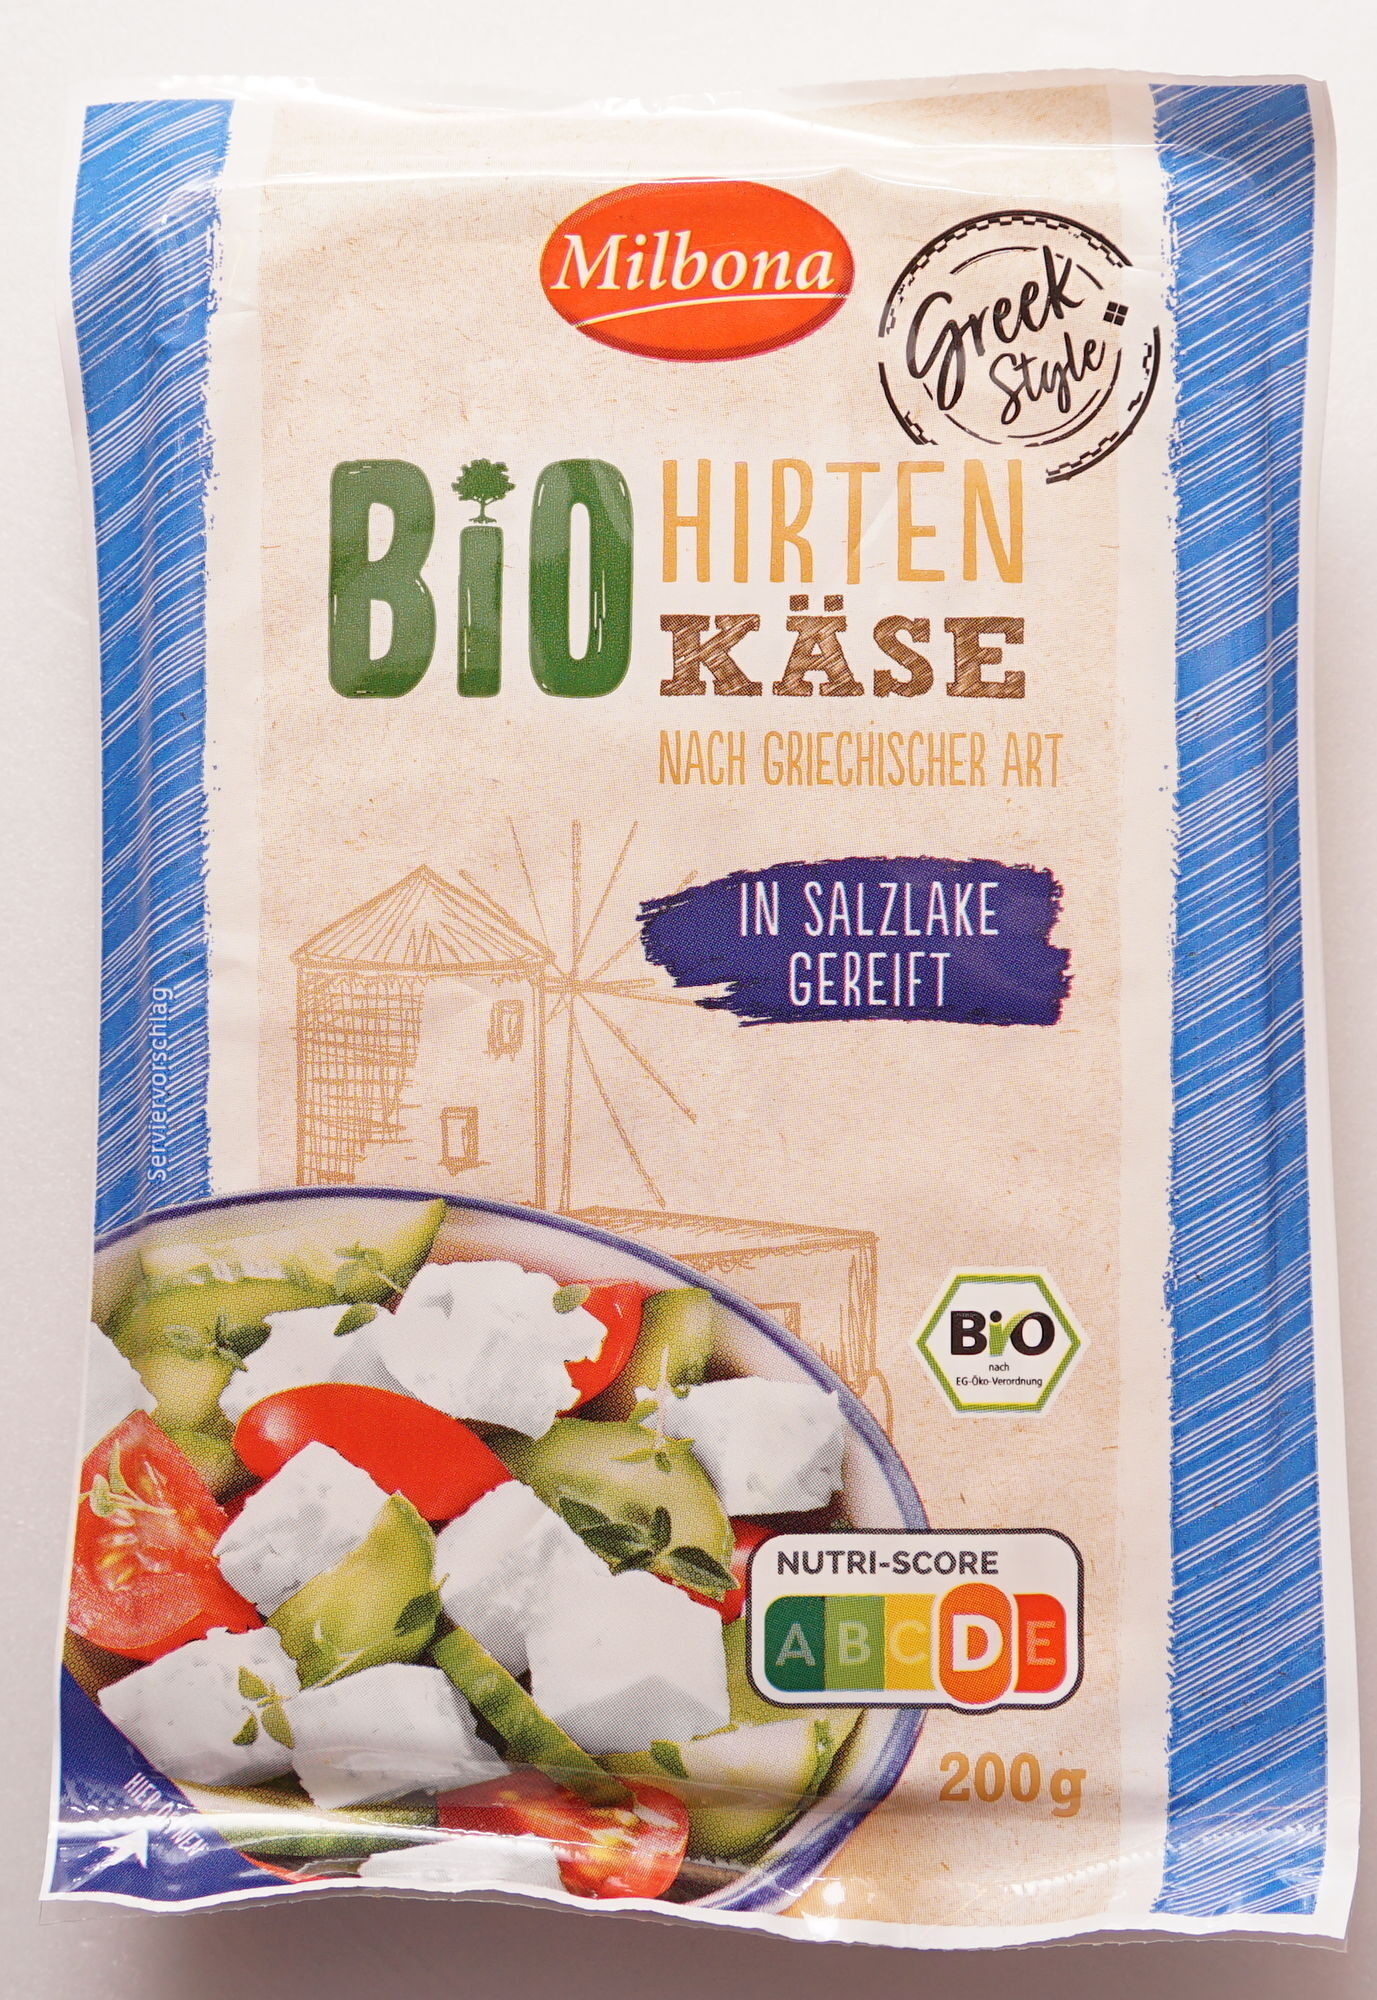 Bio Hirten Käse - Produkt